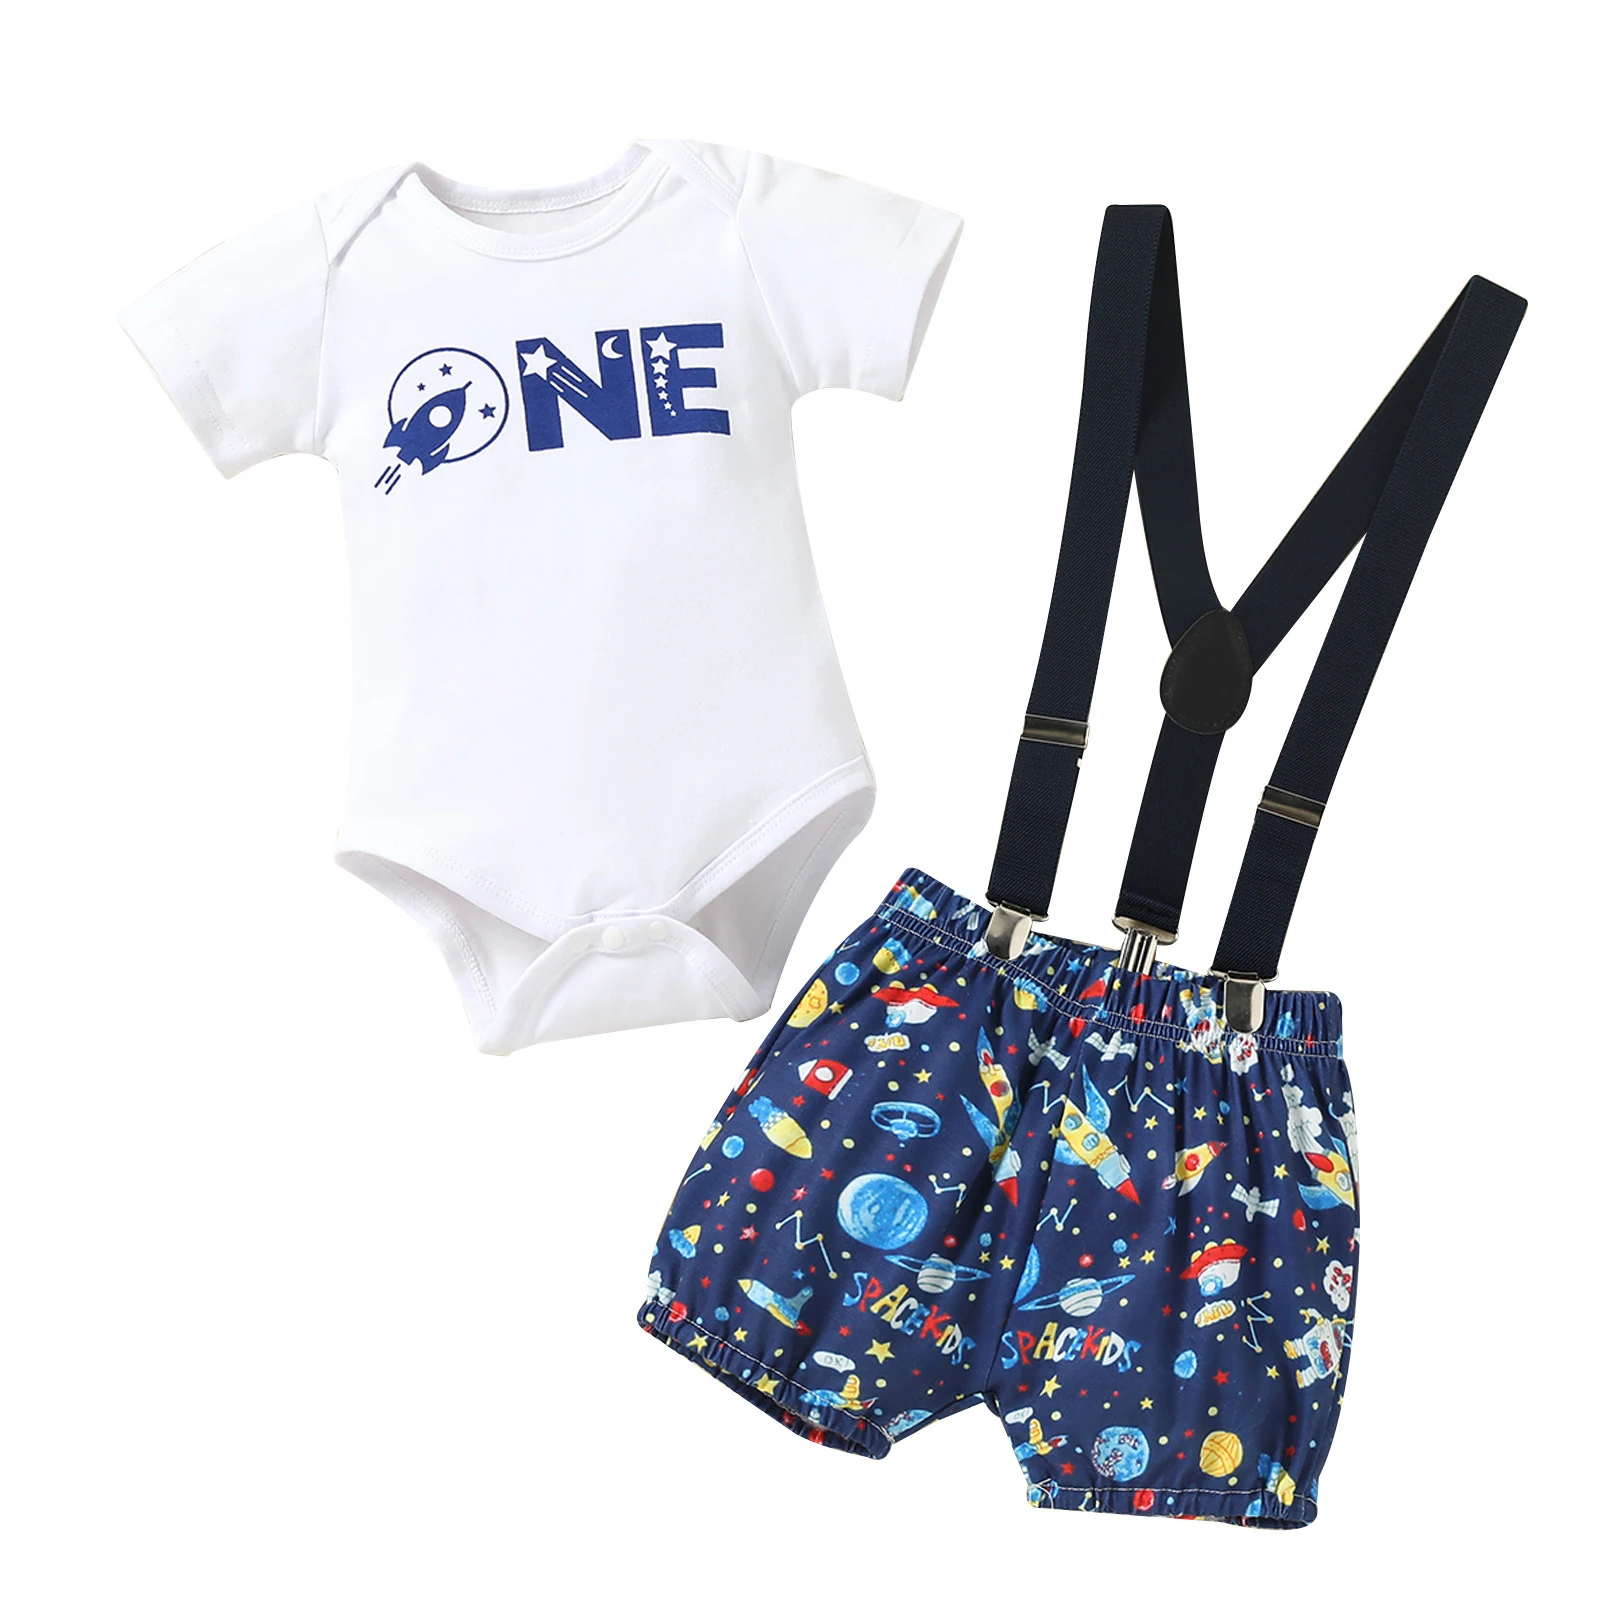 

Baby Boys Birthday Clothes Set Short Sleeve Envelope Shoulder Letter Print Romper Y-shaped Back Suspender Printed Shorts